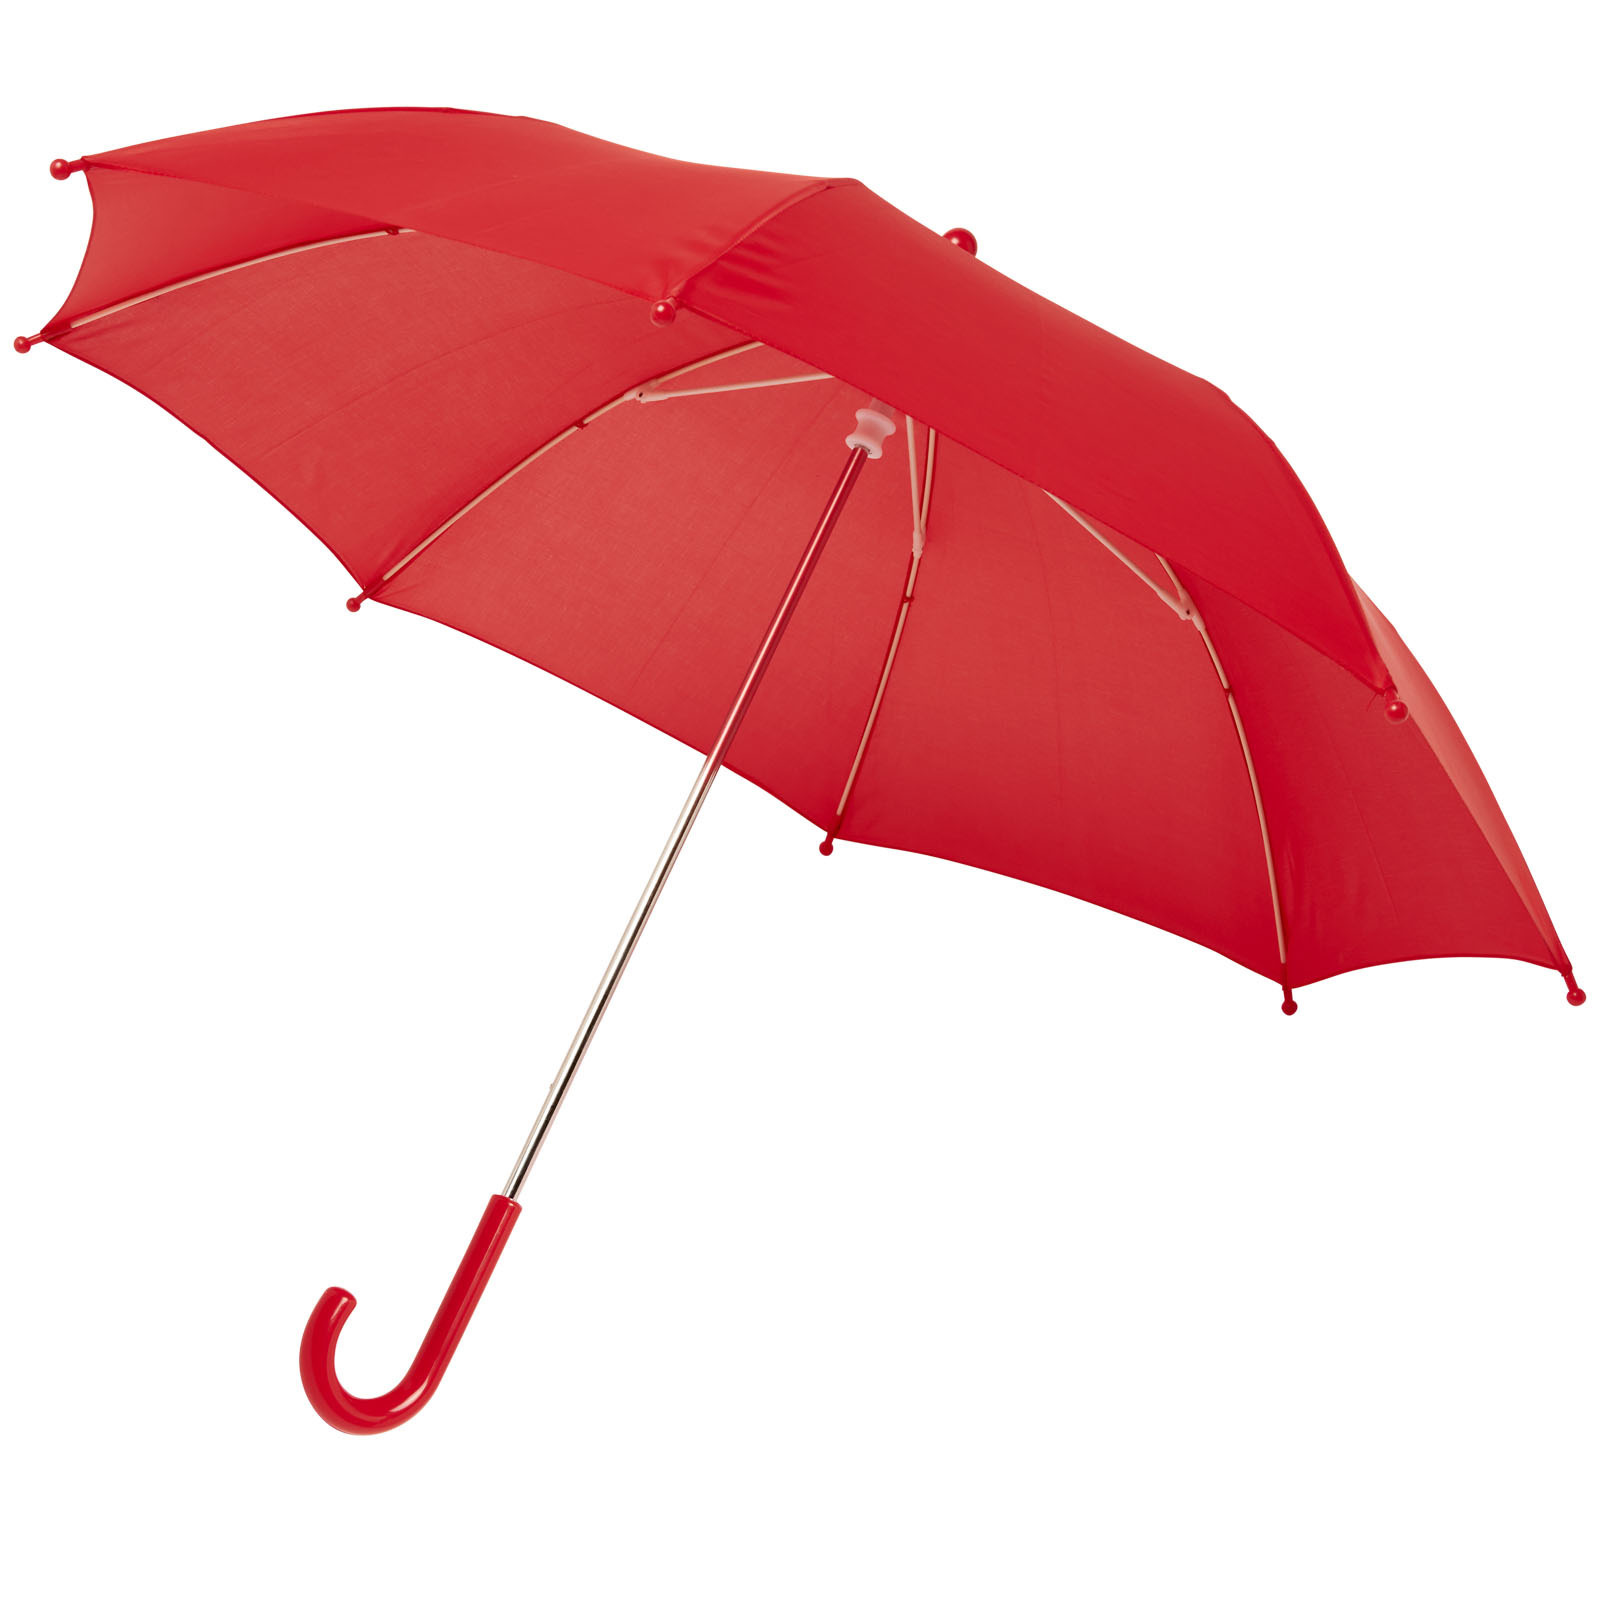 Rode storm paraplu voor kinderen van 77 cm doorsnede stormproof